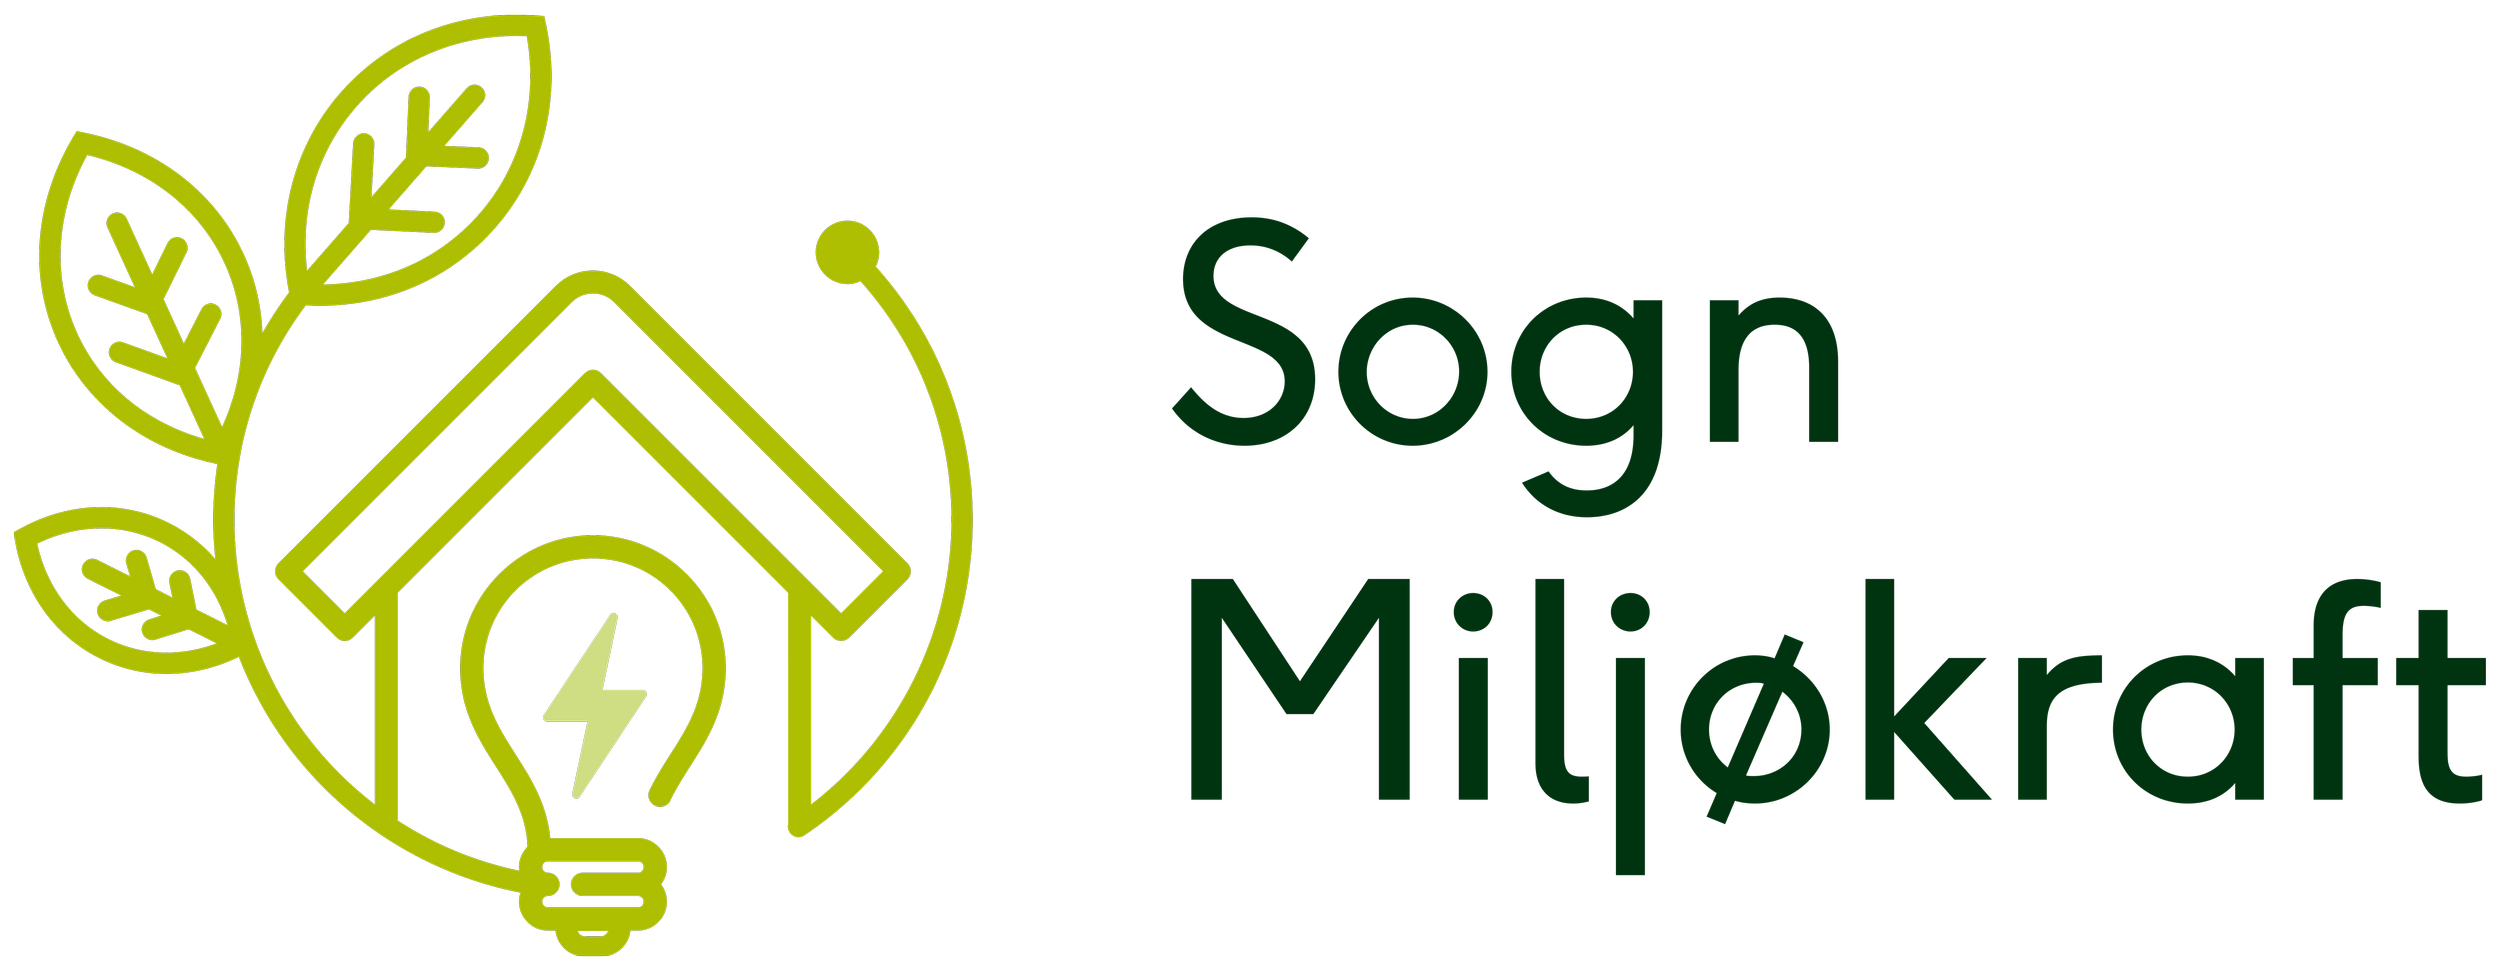 SognMiljokraft_Logo_farger.png